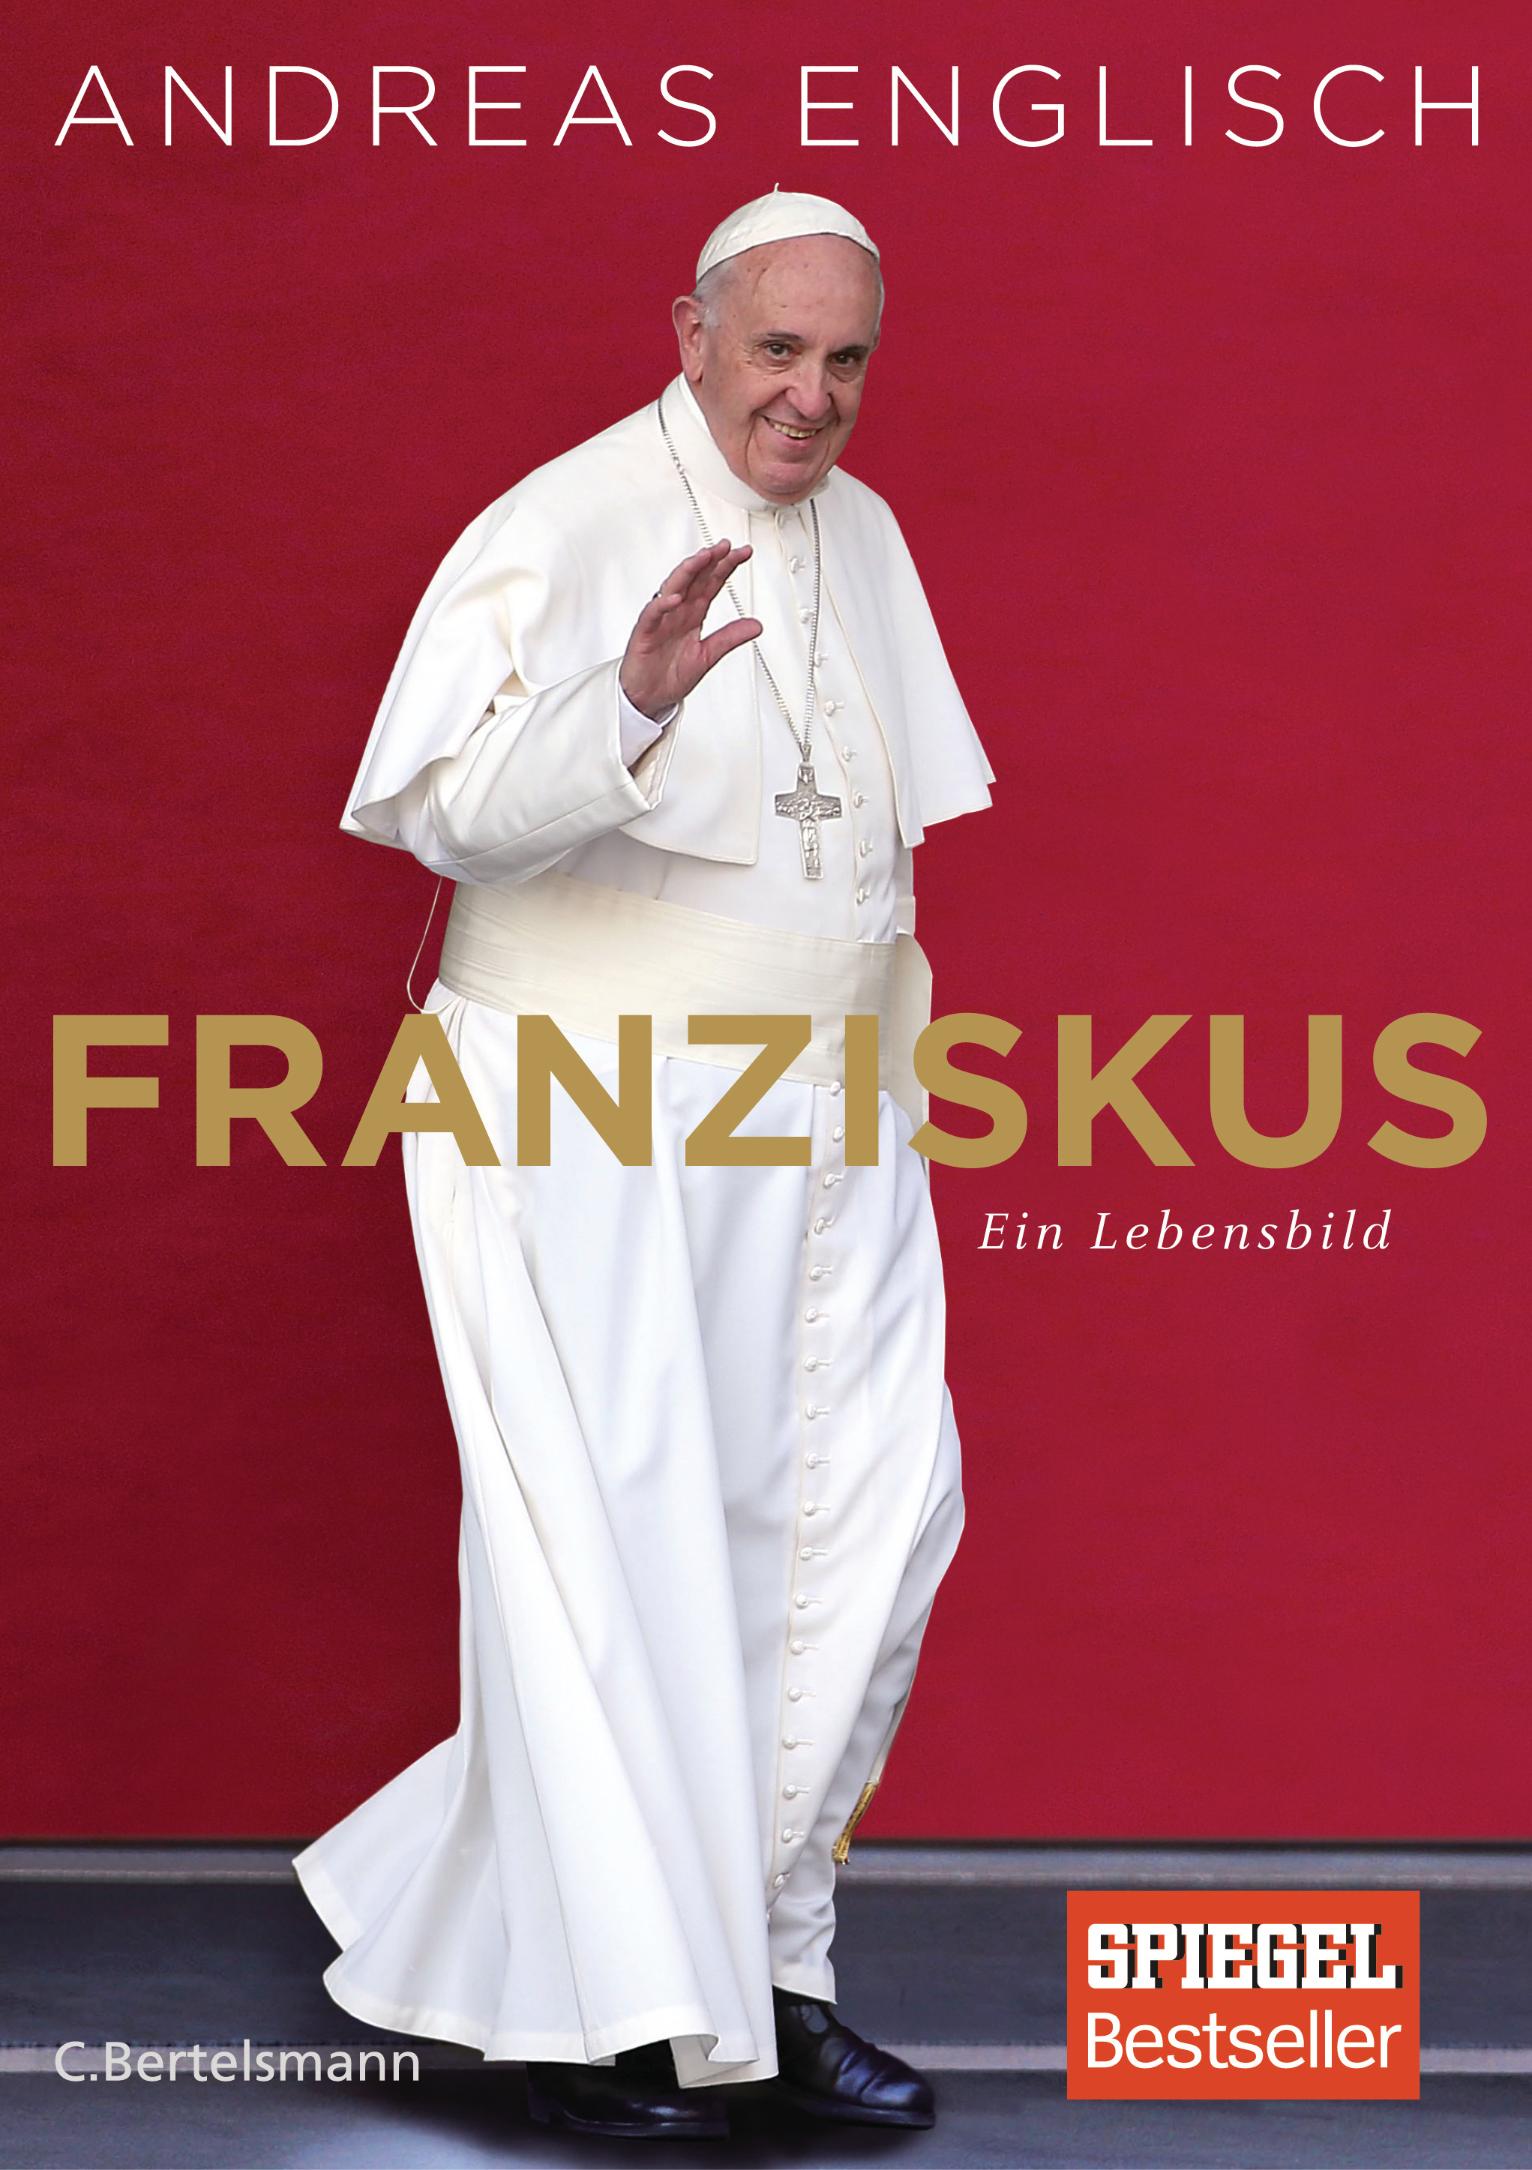 Buchcover Englisch Franziskus (c) C. Bertelsmann